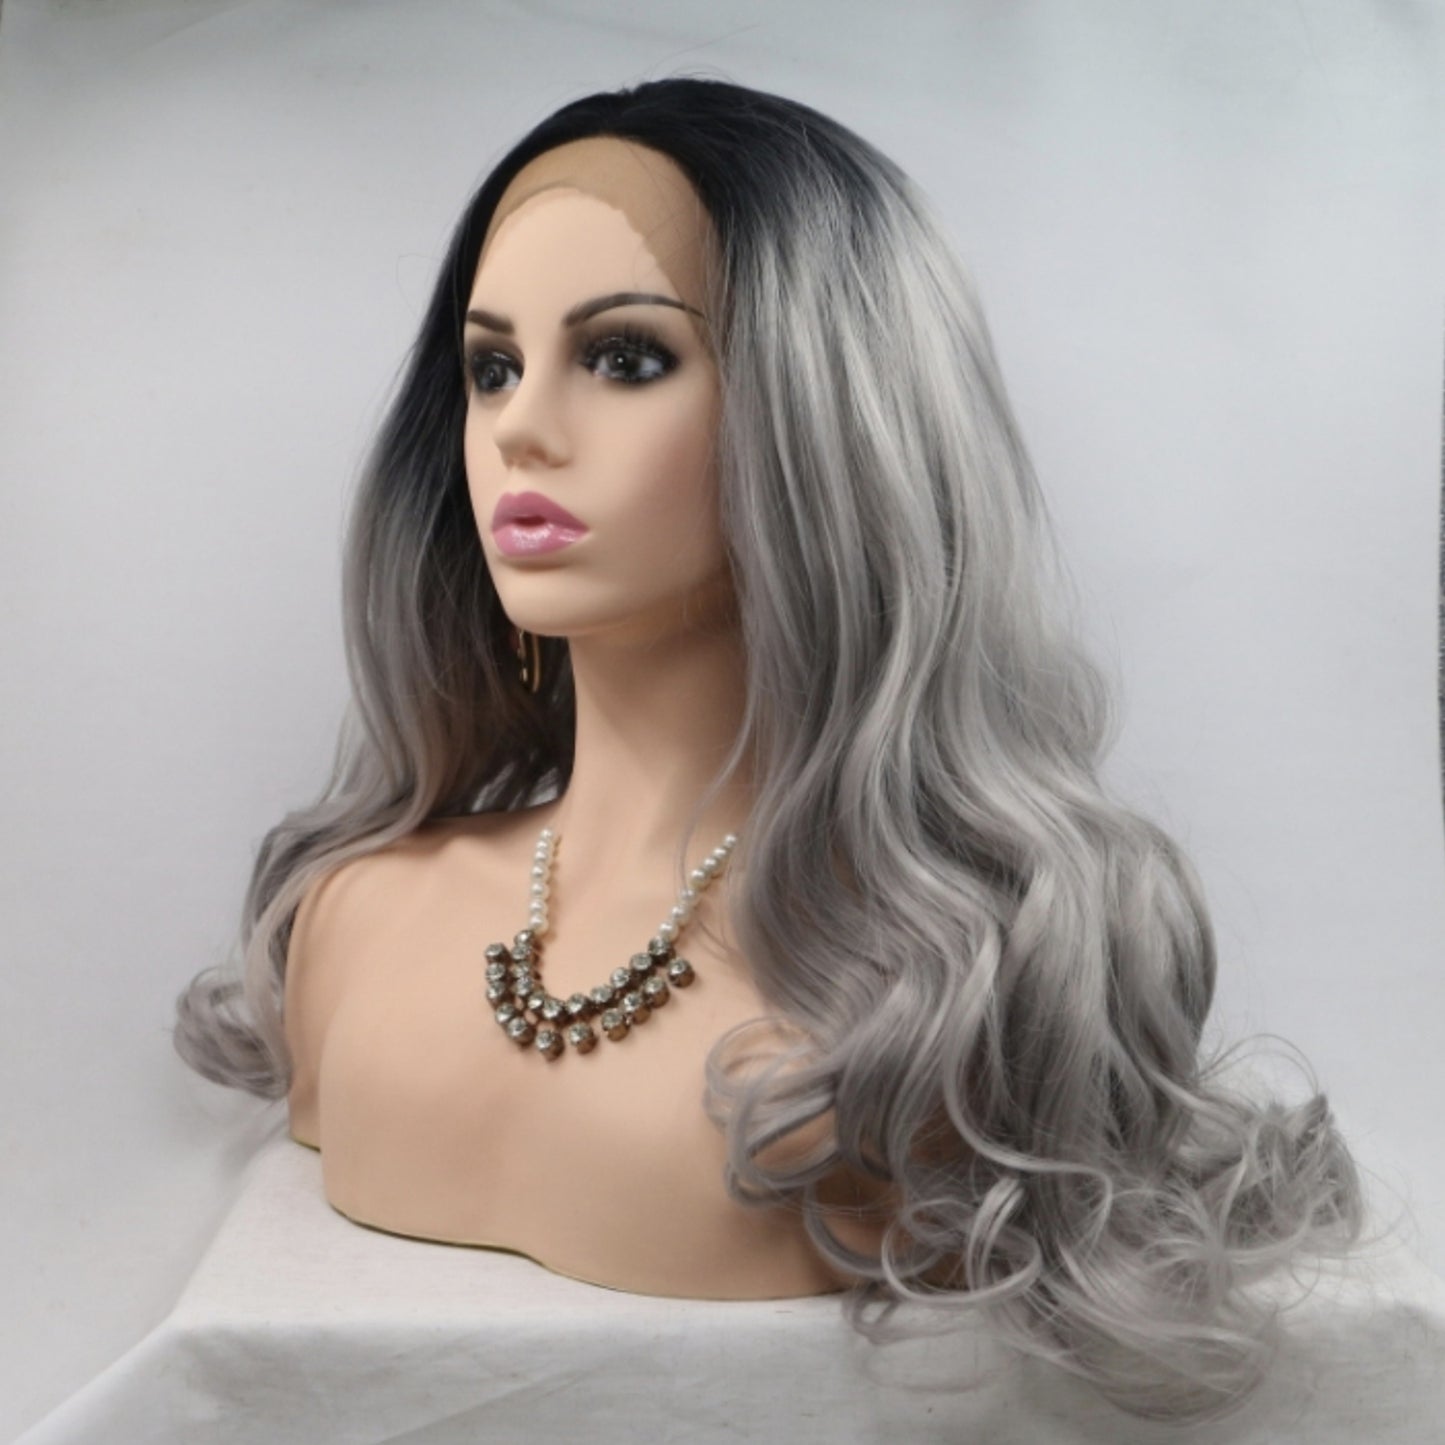 Gretta 13*3" Lace Front Wigs Synthetic Long Wavy 24" 130% Density